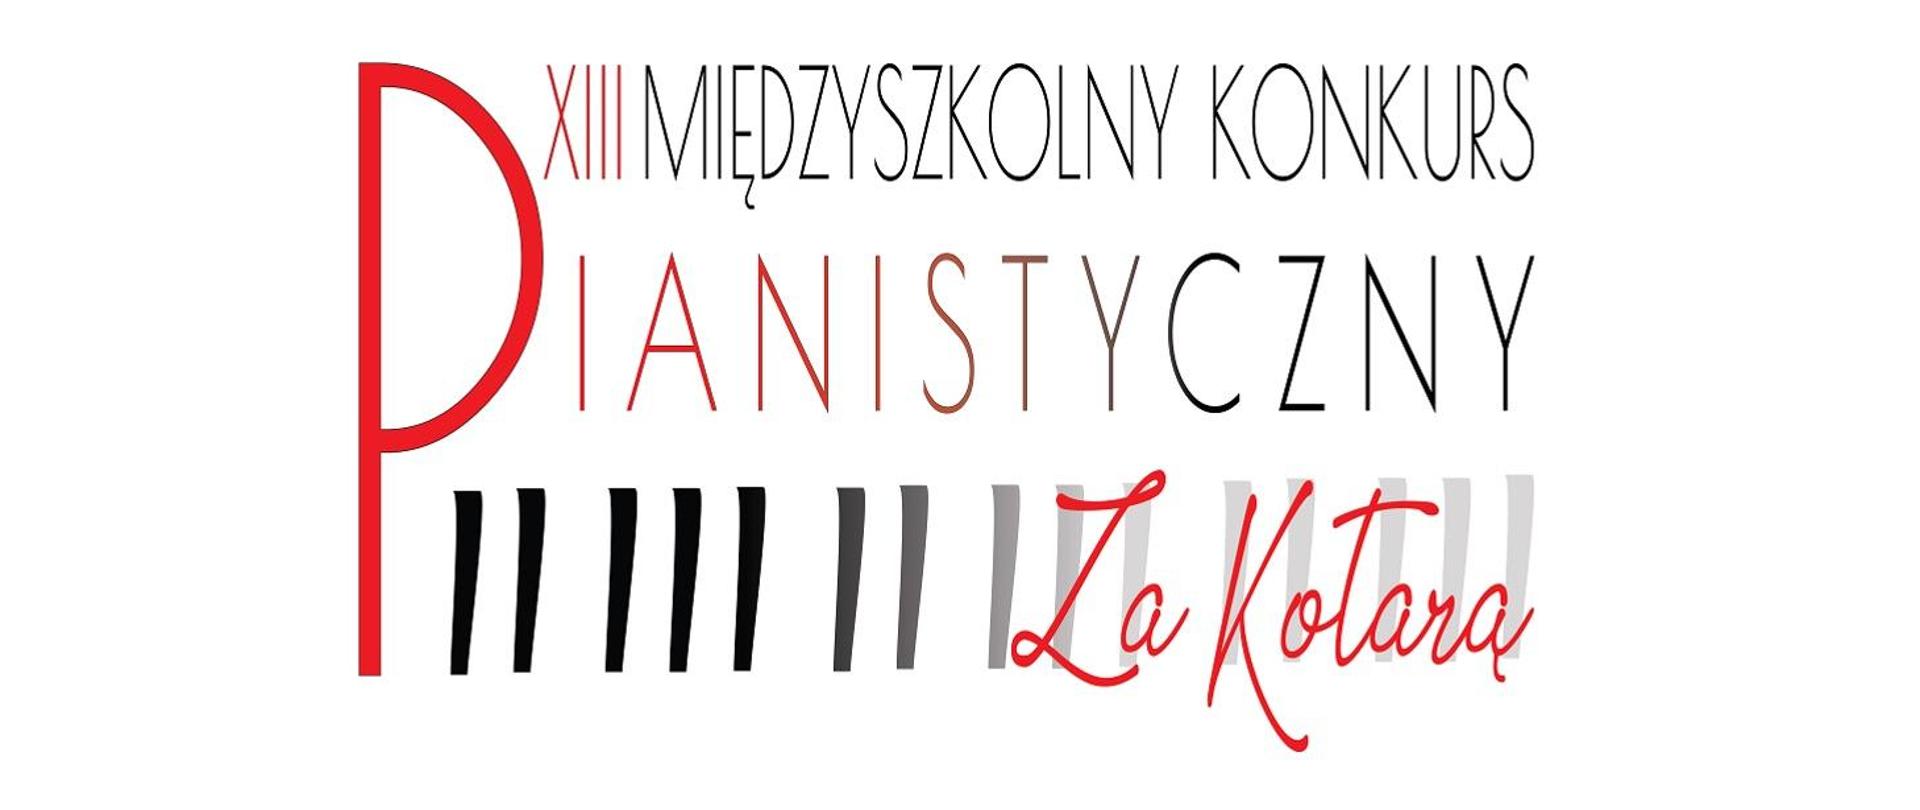 Na białym tle napis XIII Międzyszkolny Konkurs Pianistyczny Za Kotarą. Na dole czarne symbole klawiszy fortepianowych.